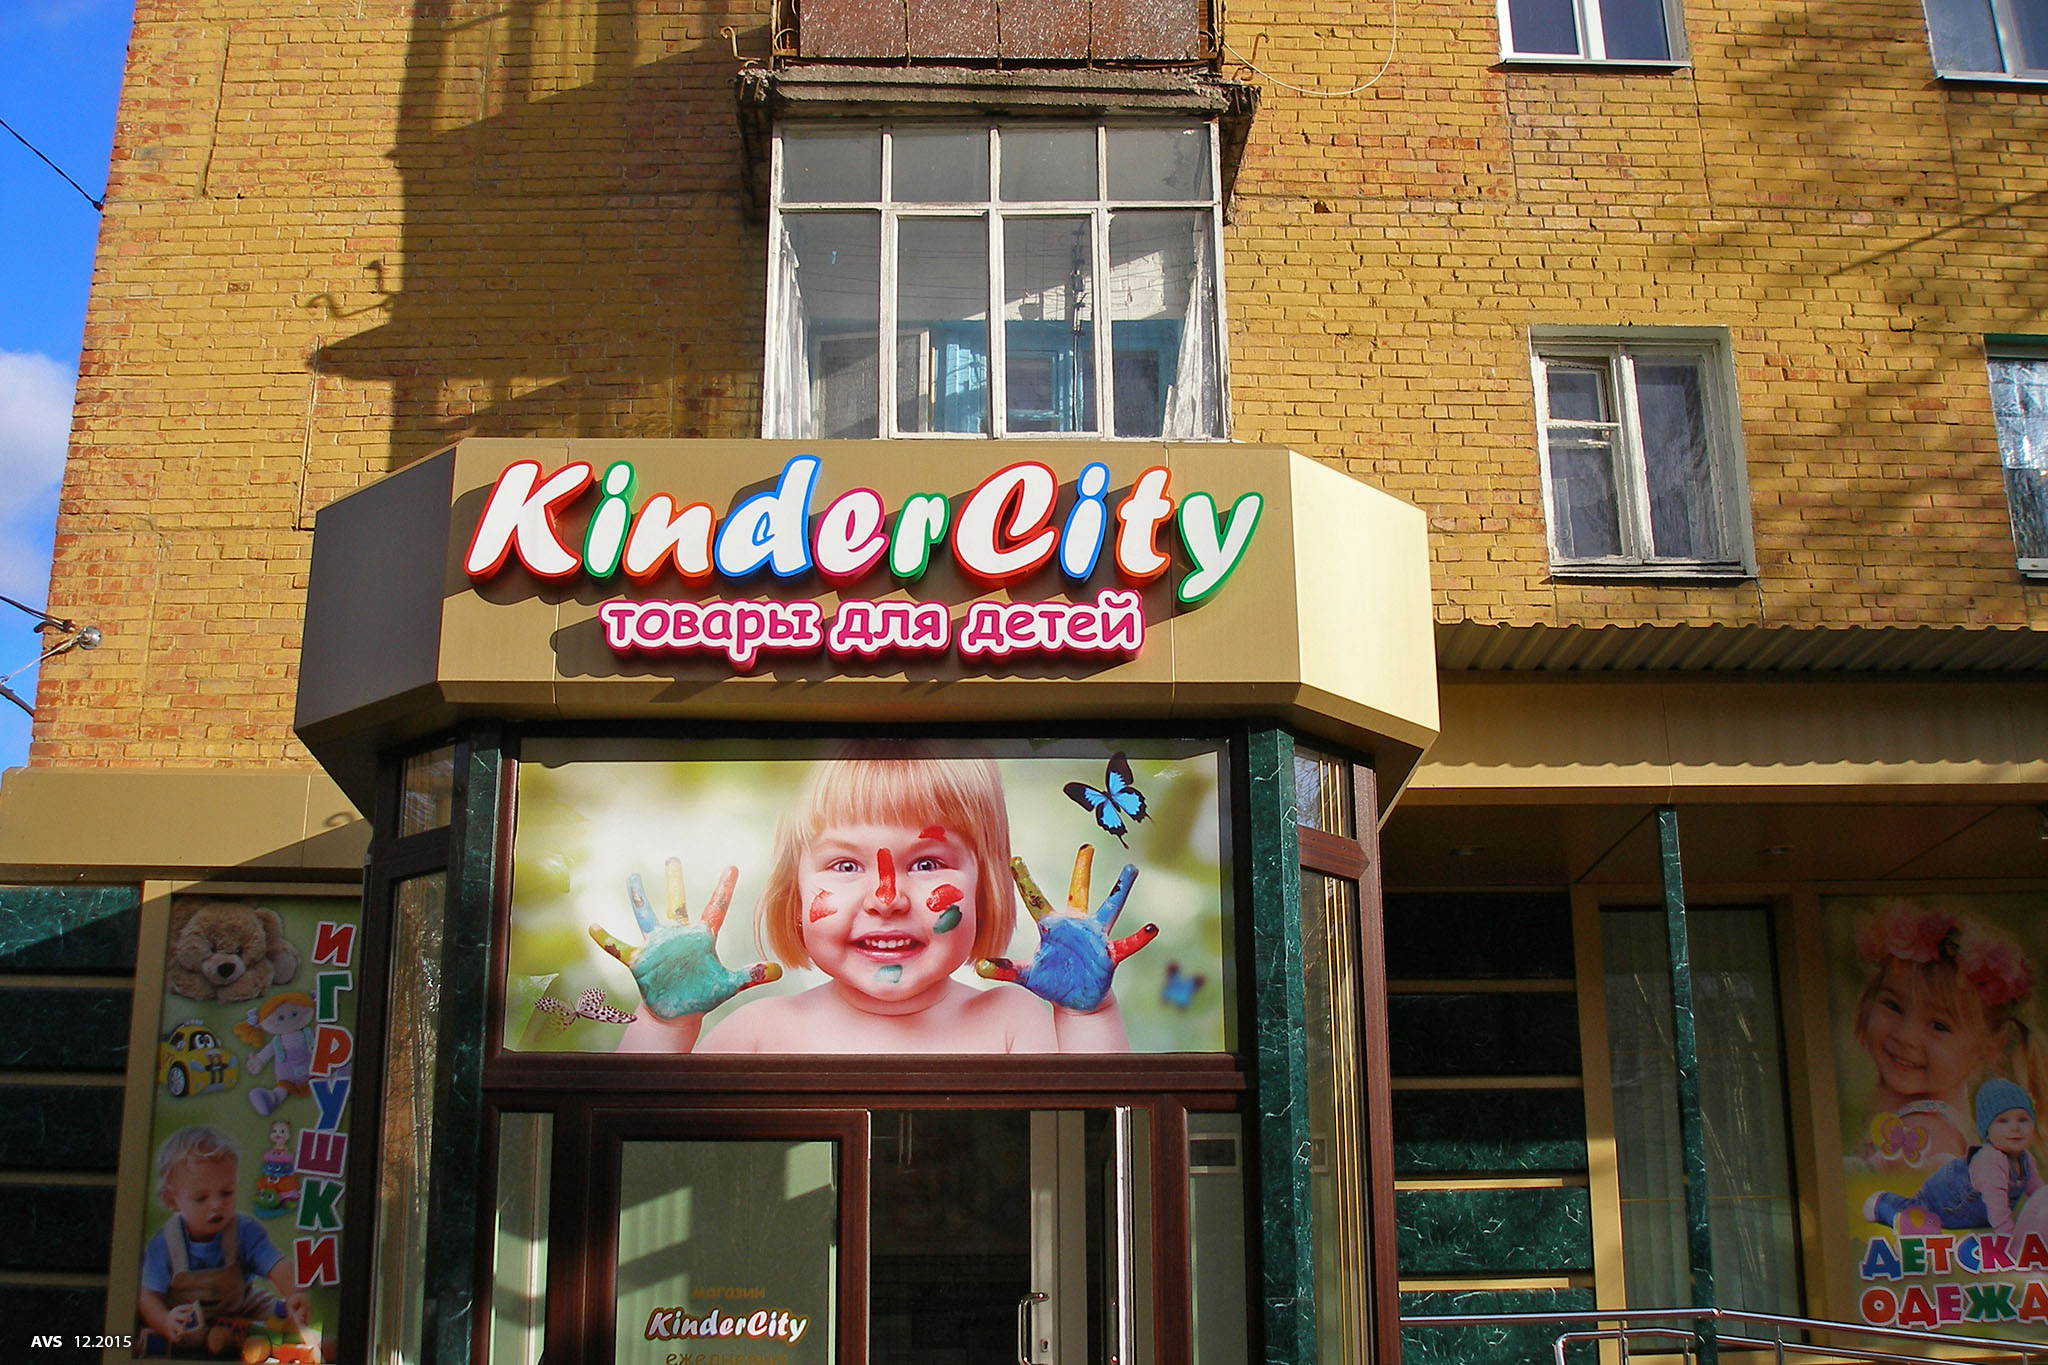 Kinder city